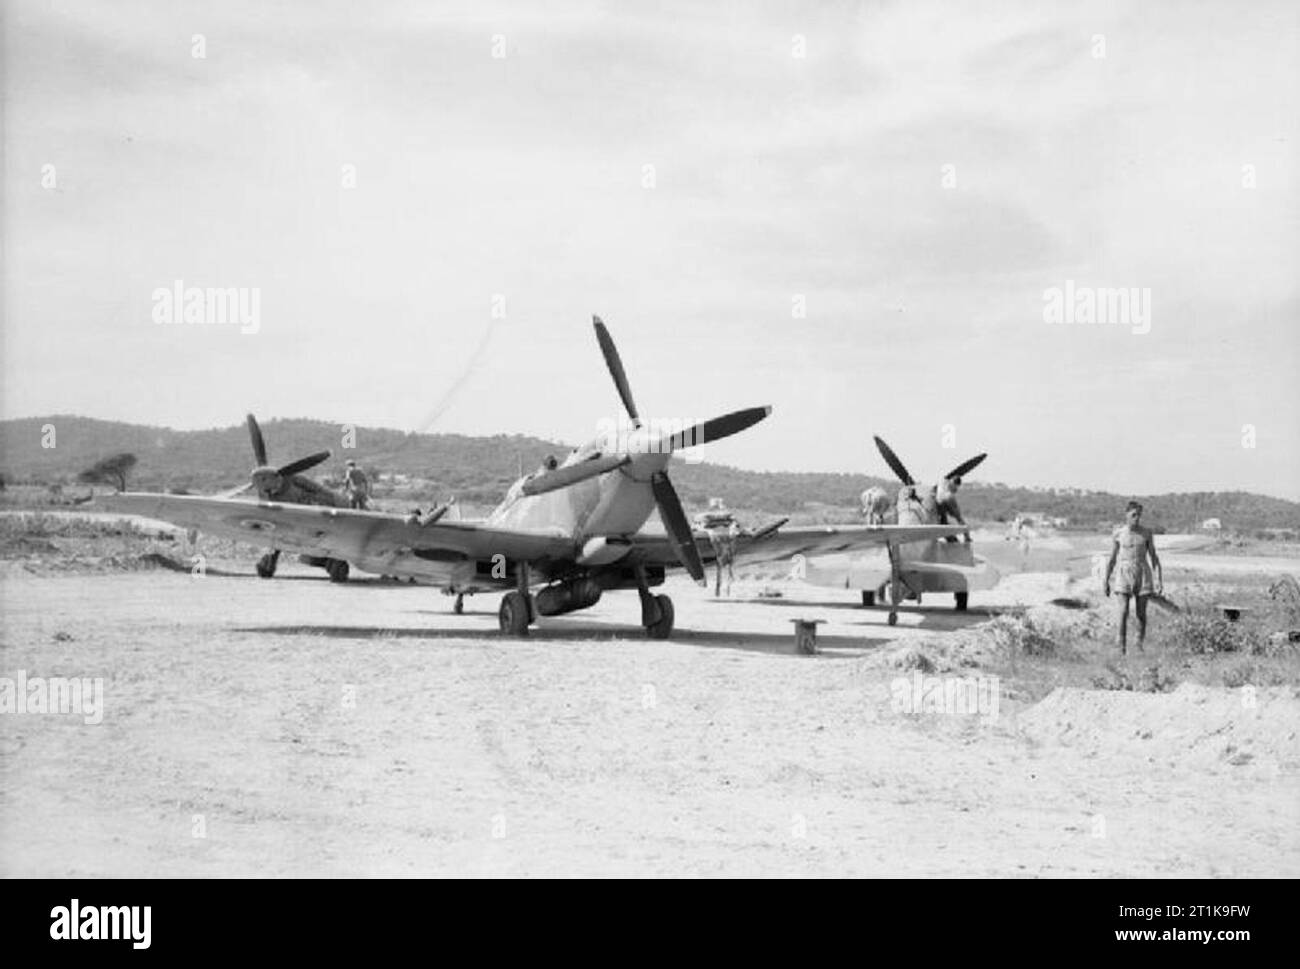 Royal Air Force in Malta, Gibraltar und das Mittelmeer, 1940-1945. Operation Dragoon: die Invasion der Alliierten im Süden Frankreichs. Supermarine Spitfire Mark VIIIs und IXs von Nr. 43 Squadron RAF an Zerstreuung Punkte, in Ramatuelle Landeplatz geparkt. Stockfoto